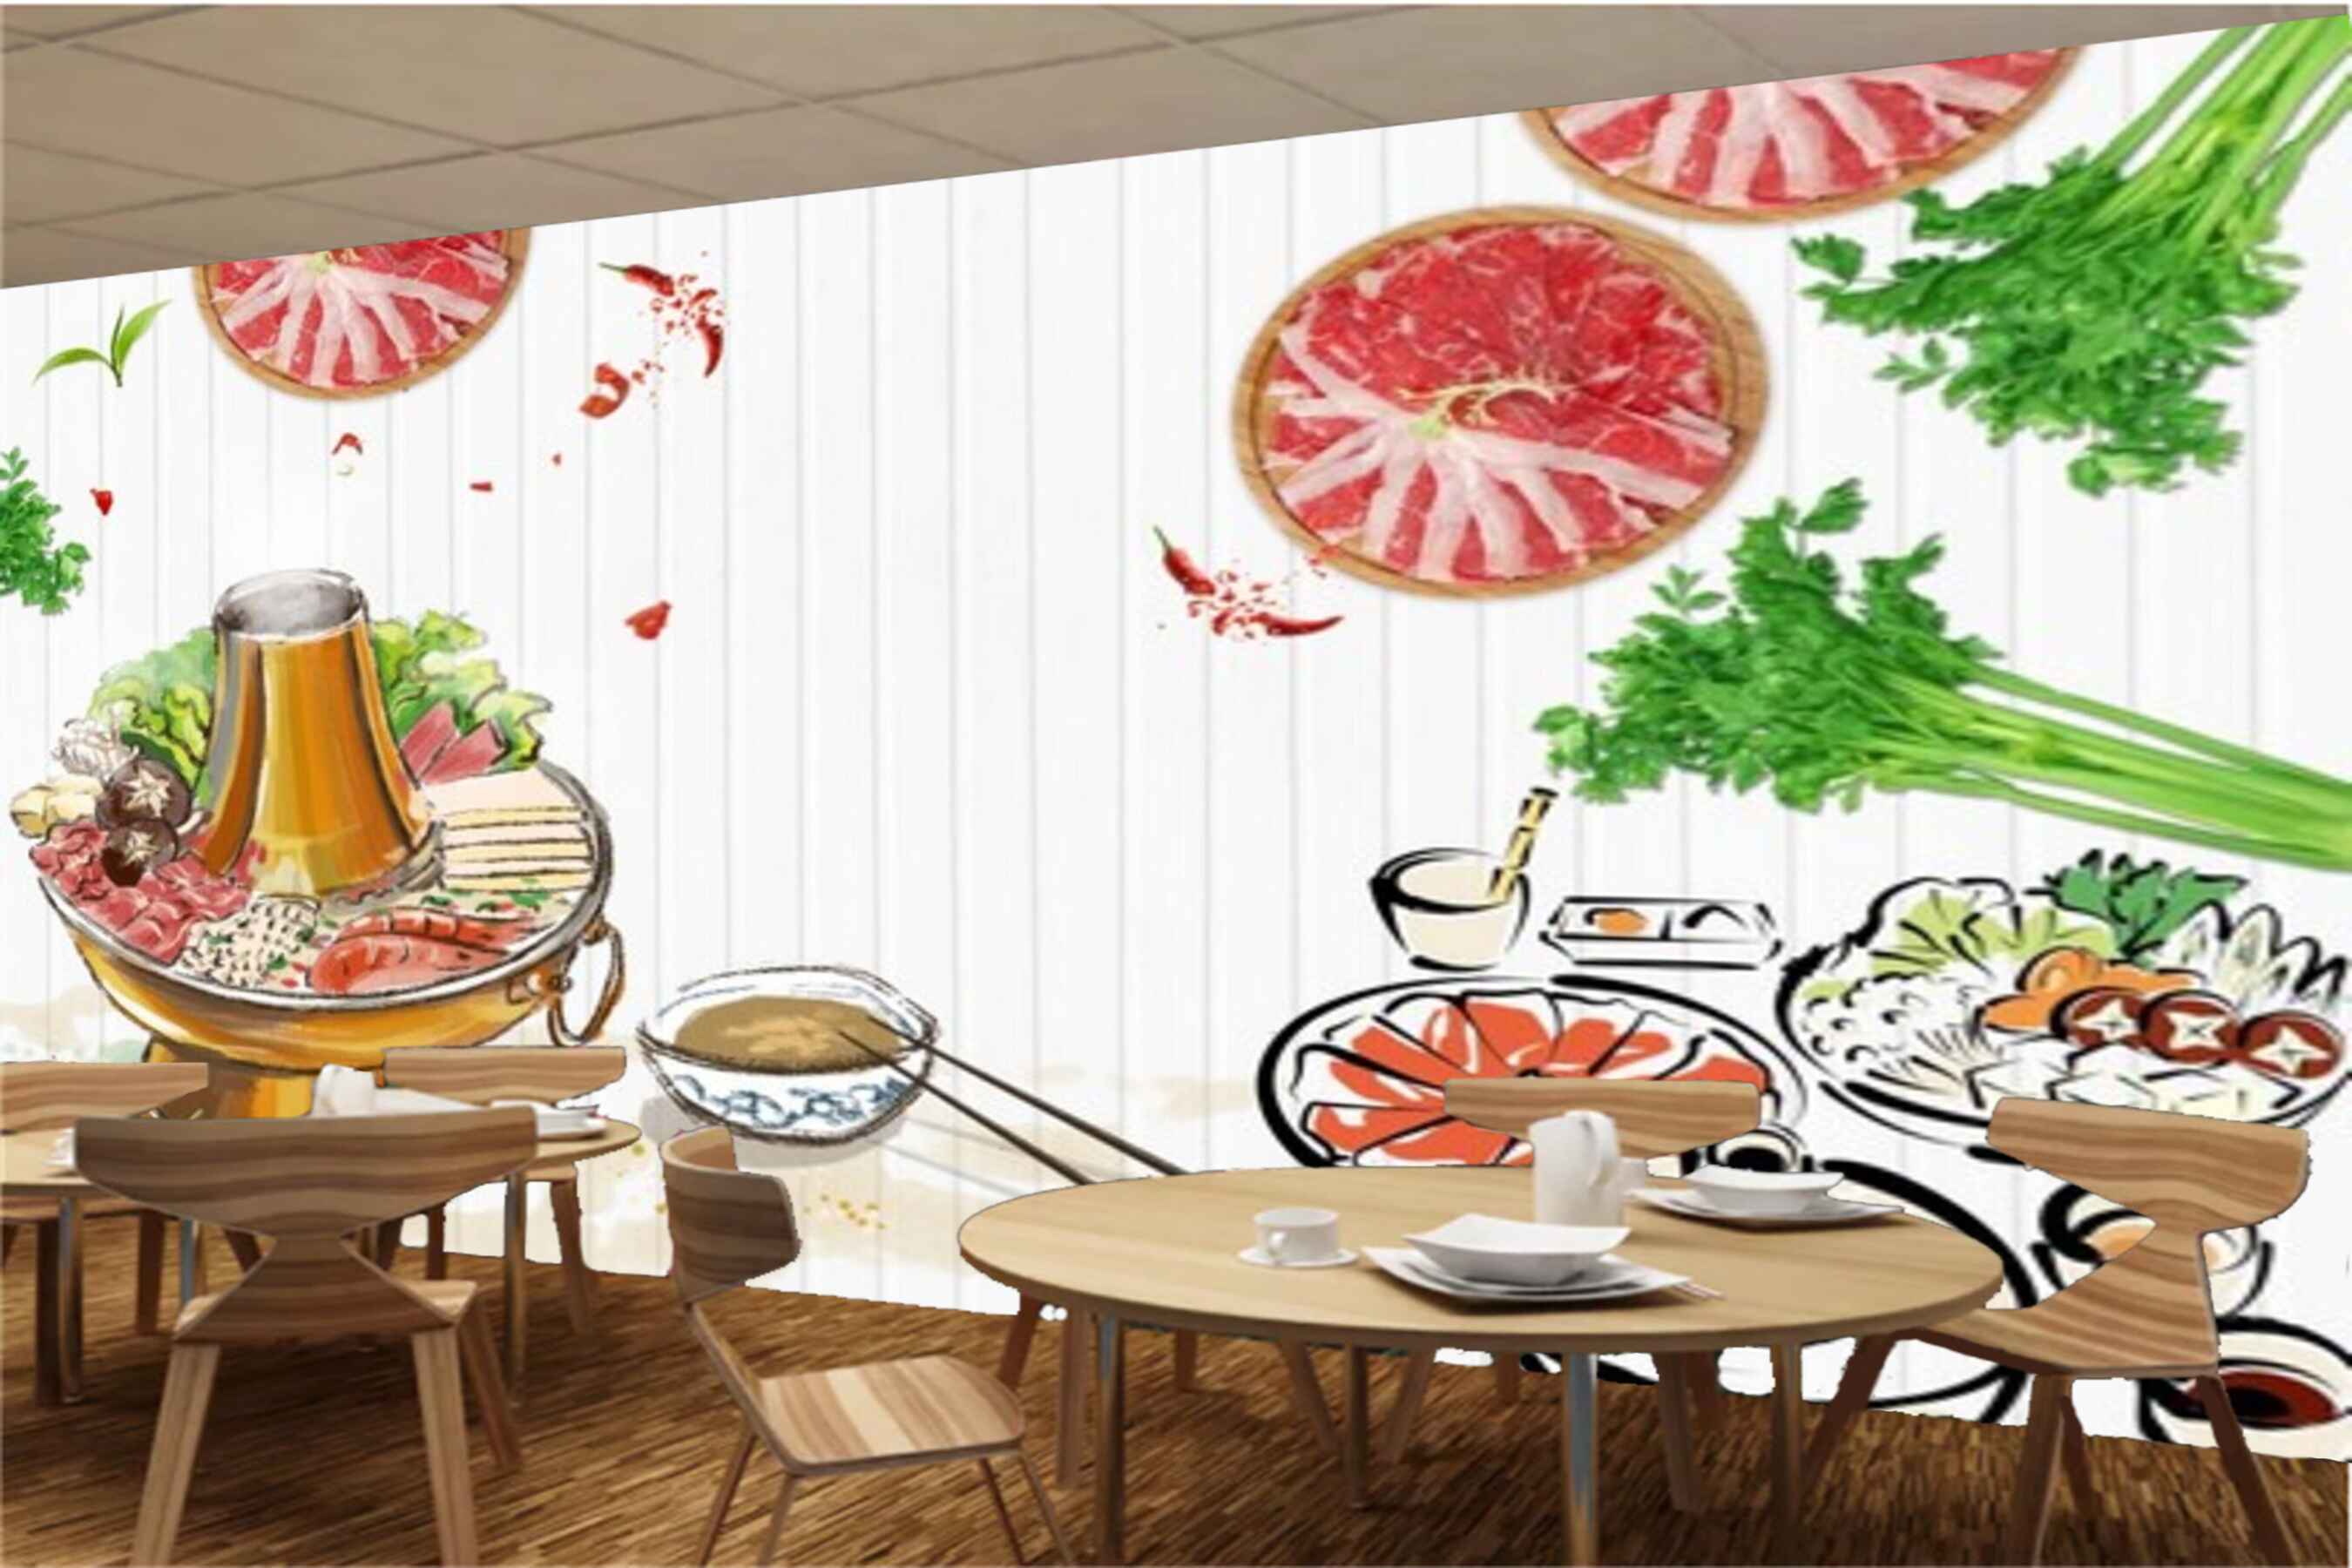 Avikalp MWZ3124 salads Herbs Soups HD Wallpaper for Cafe Restaurant